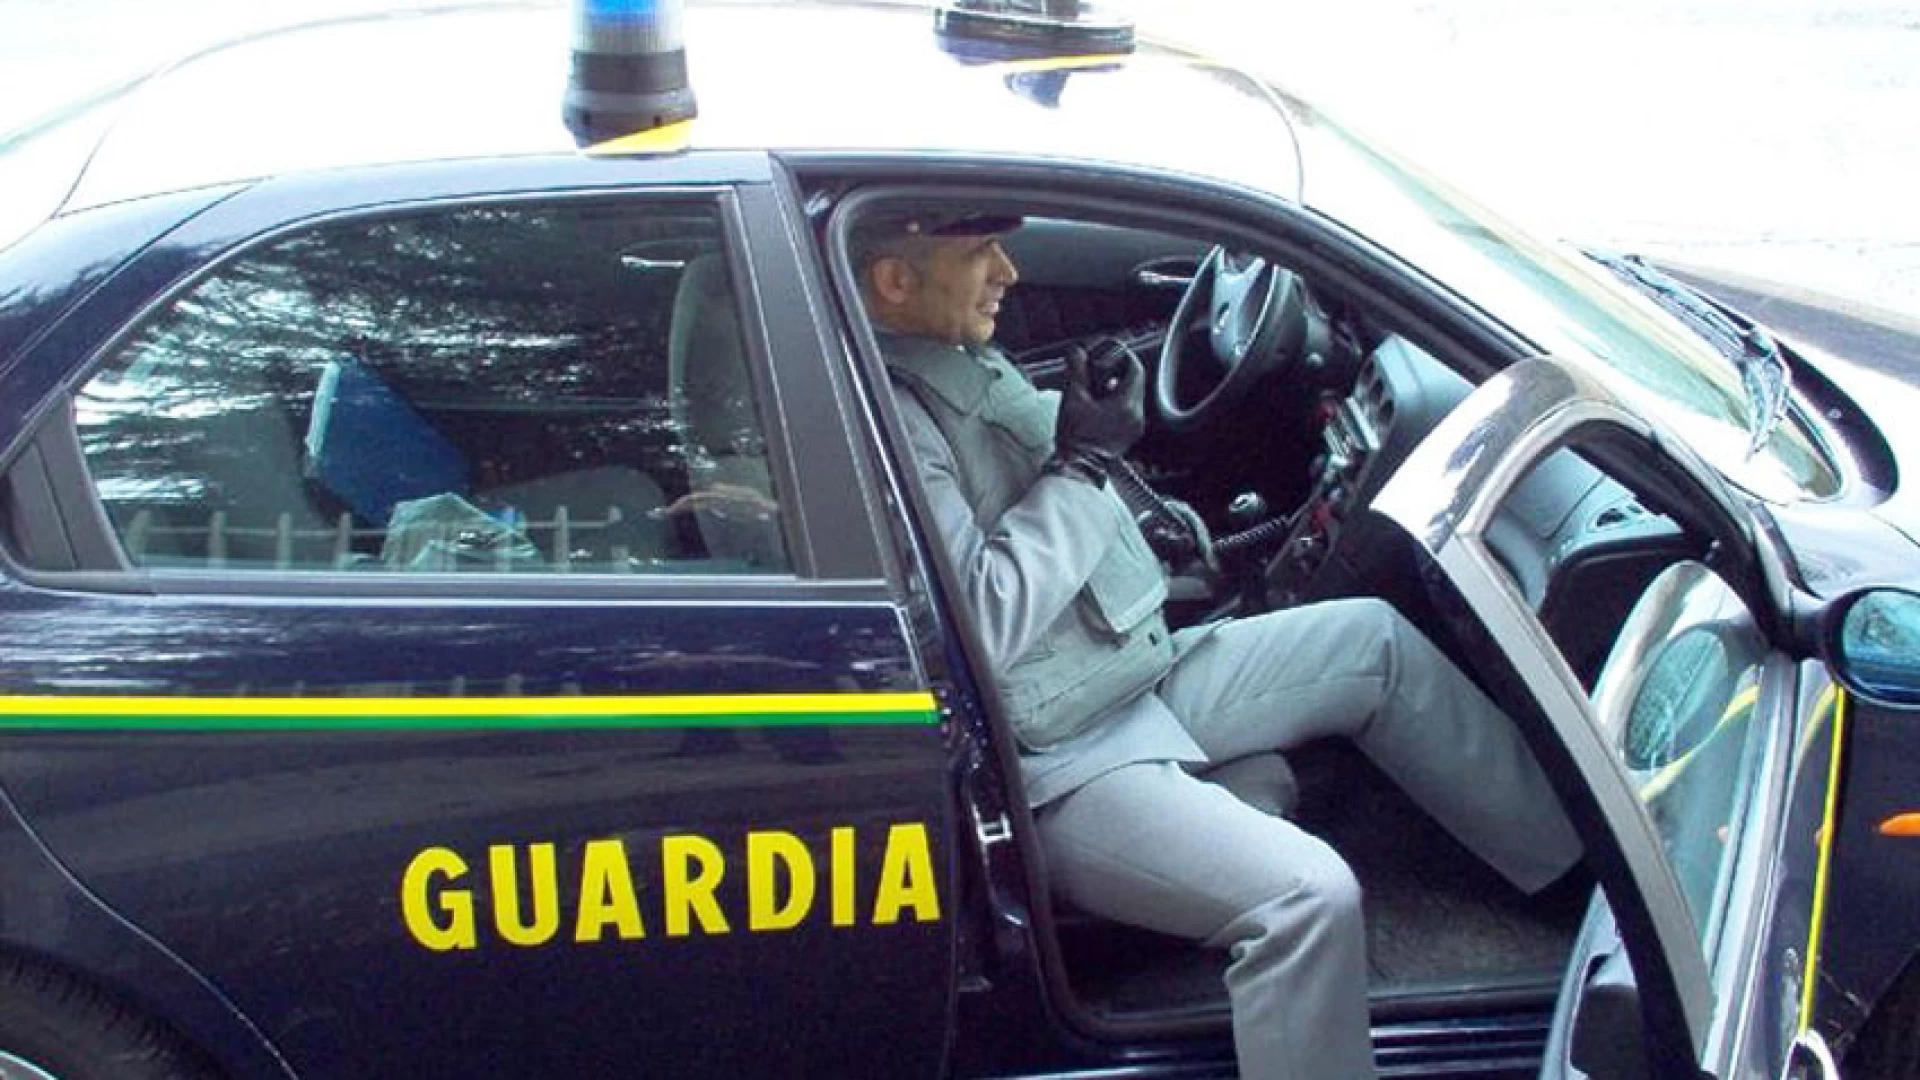 Campobasso: concorso pubblico pilotato, sette denunciati dalla Guardia di Finanza. Era stato assunto un vigile urbano.